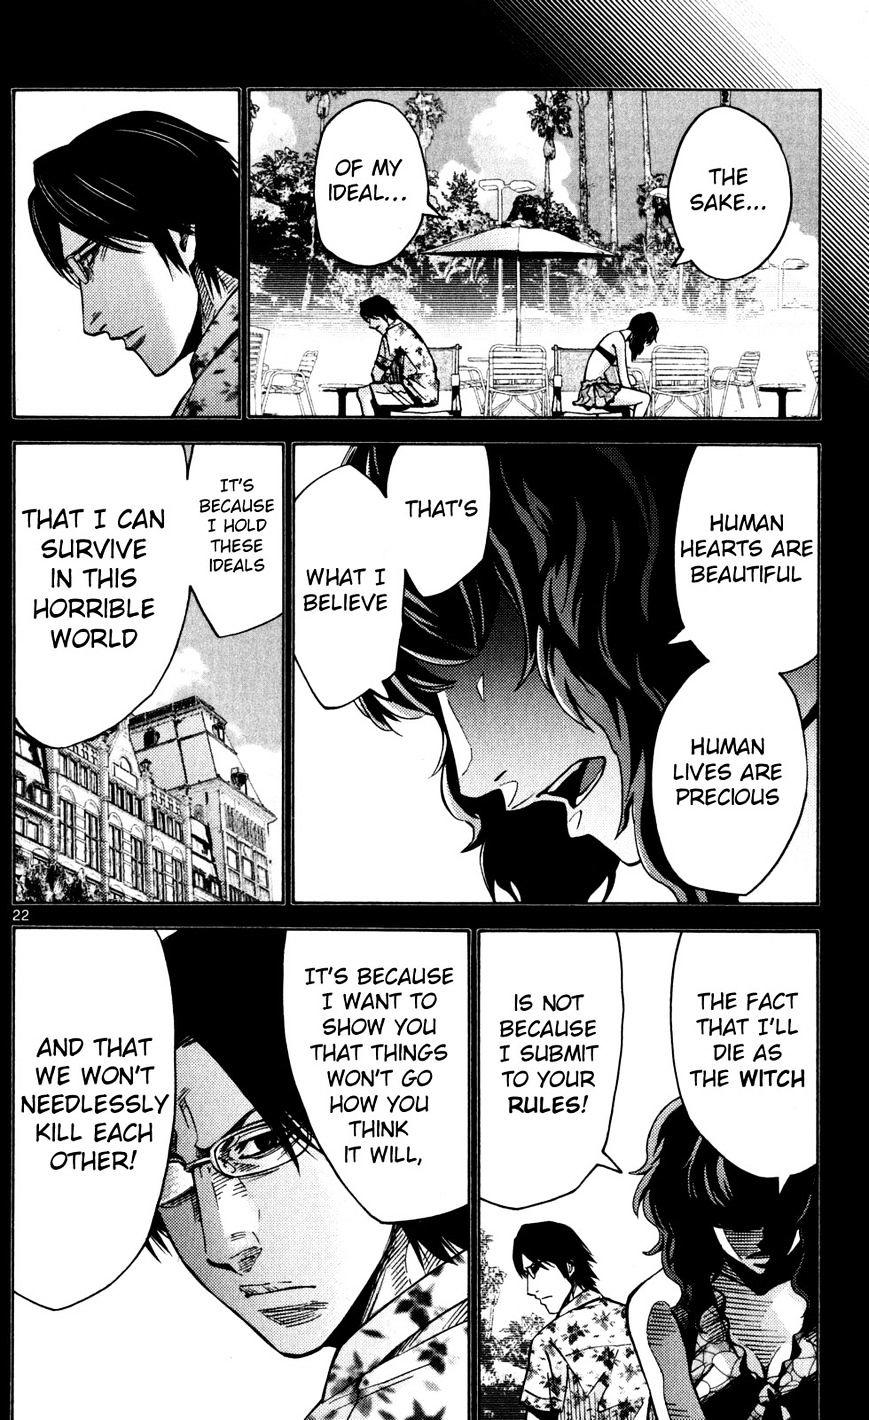 Imawa No Kuni No Alice Chapter 51.5 : Side Story 6 - King Of Diamonds (5) page 22 - Mangakakalot